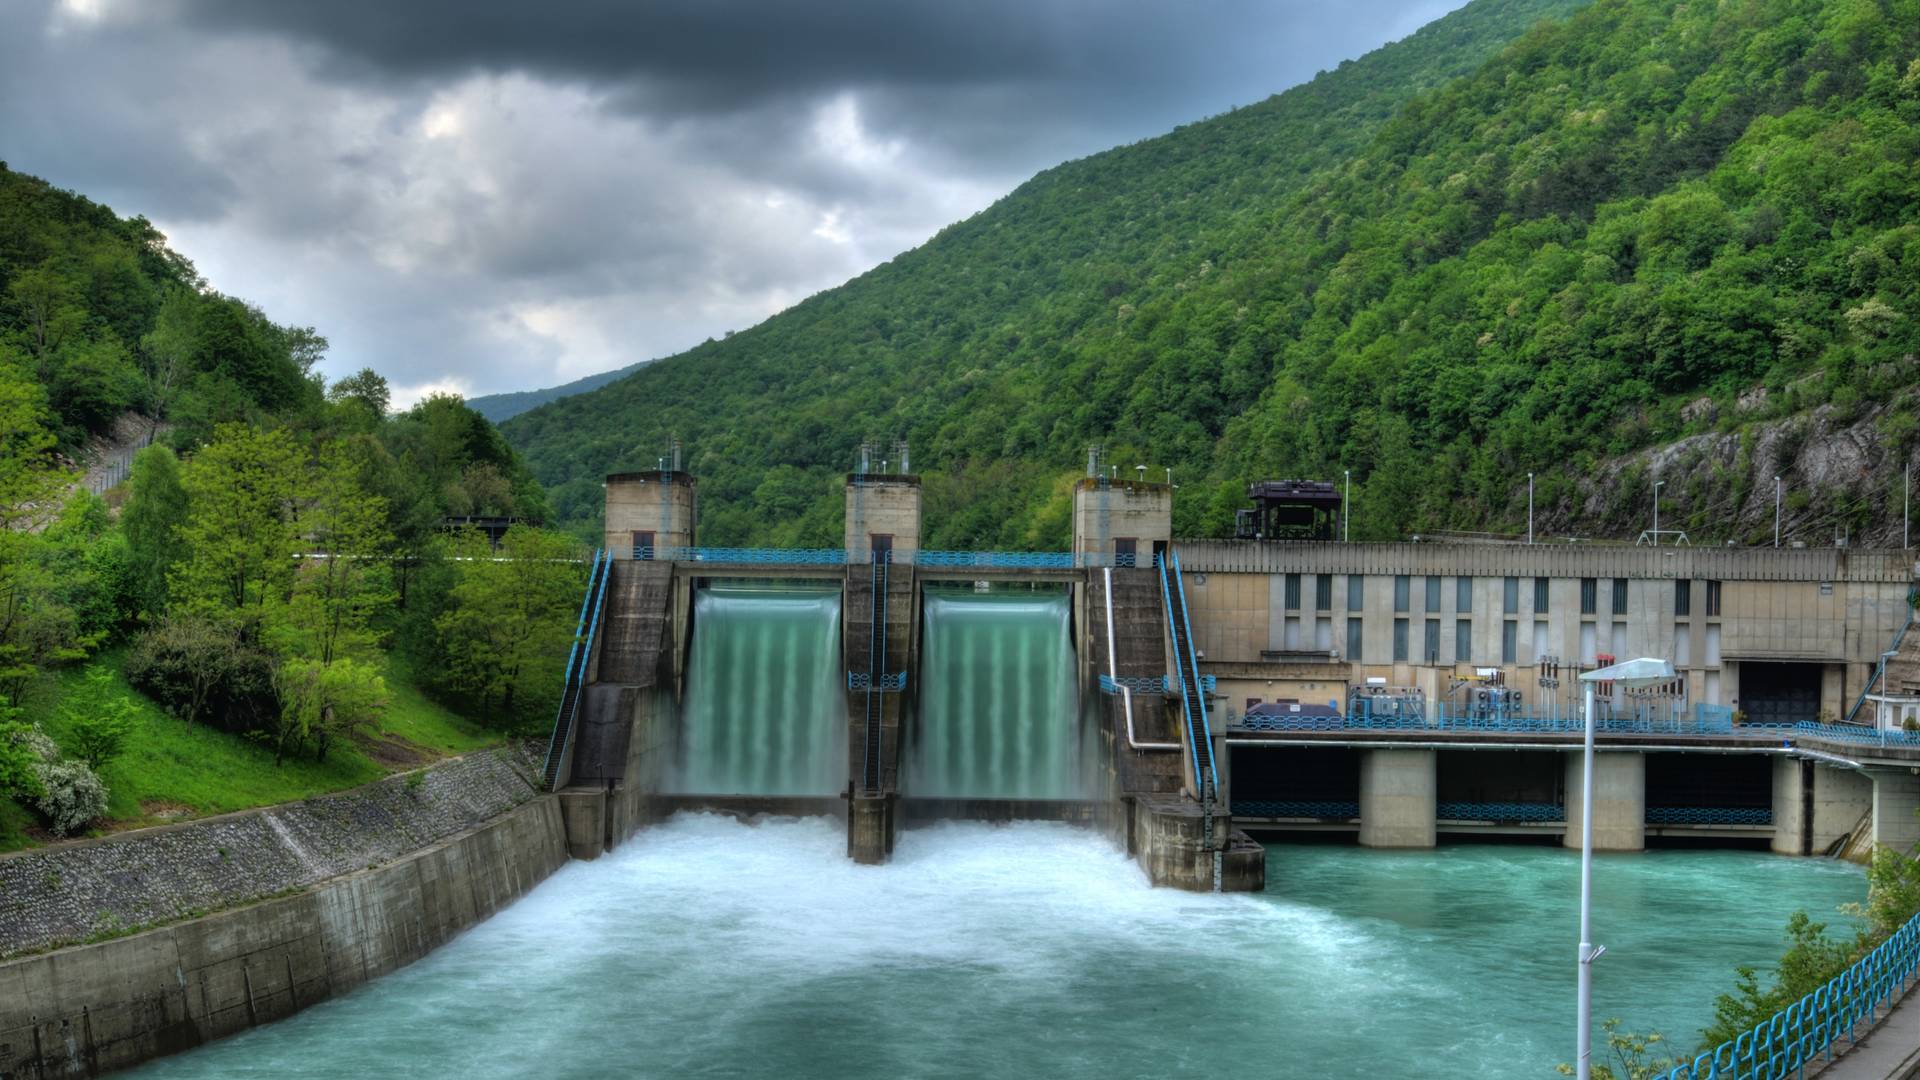 Włoski region jest samowystarczalny dzięki hydroelektrowni. Ale to nie energia przyszłości